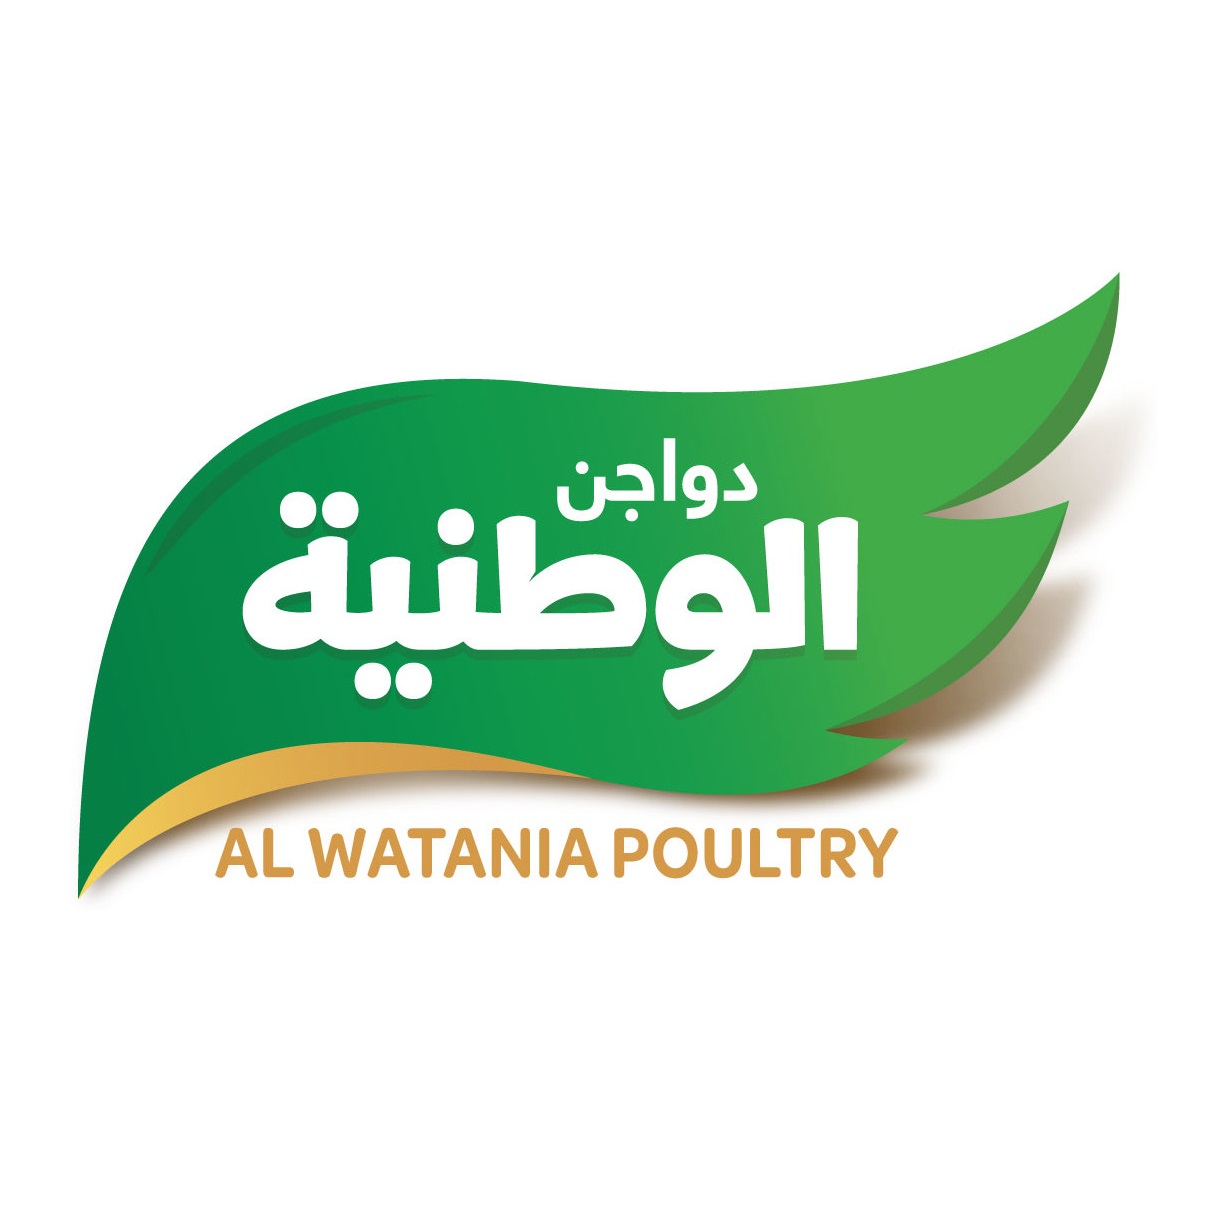 Alwatania Poultry